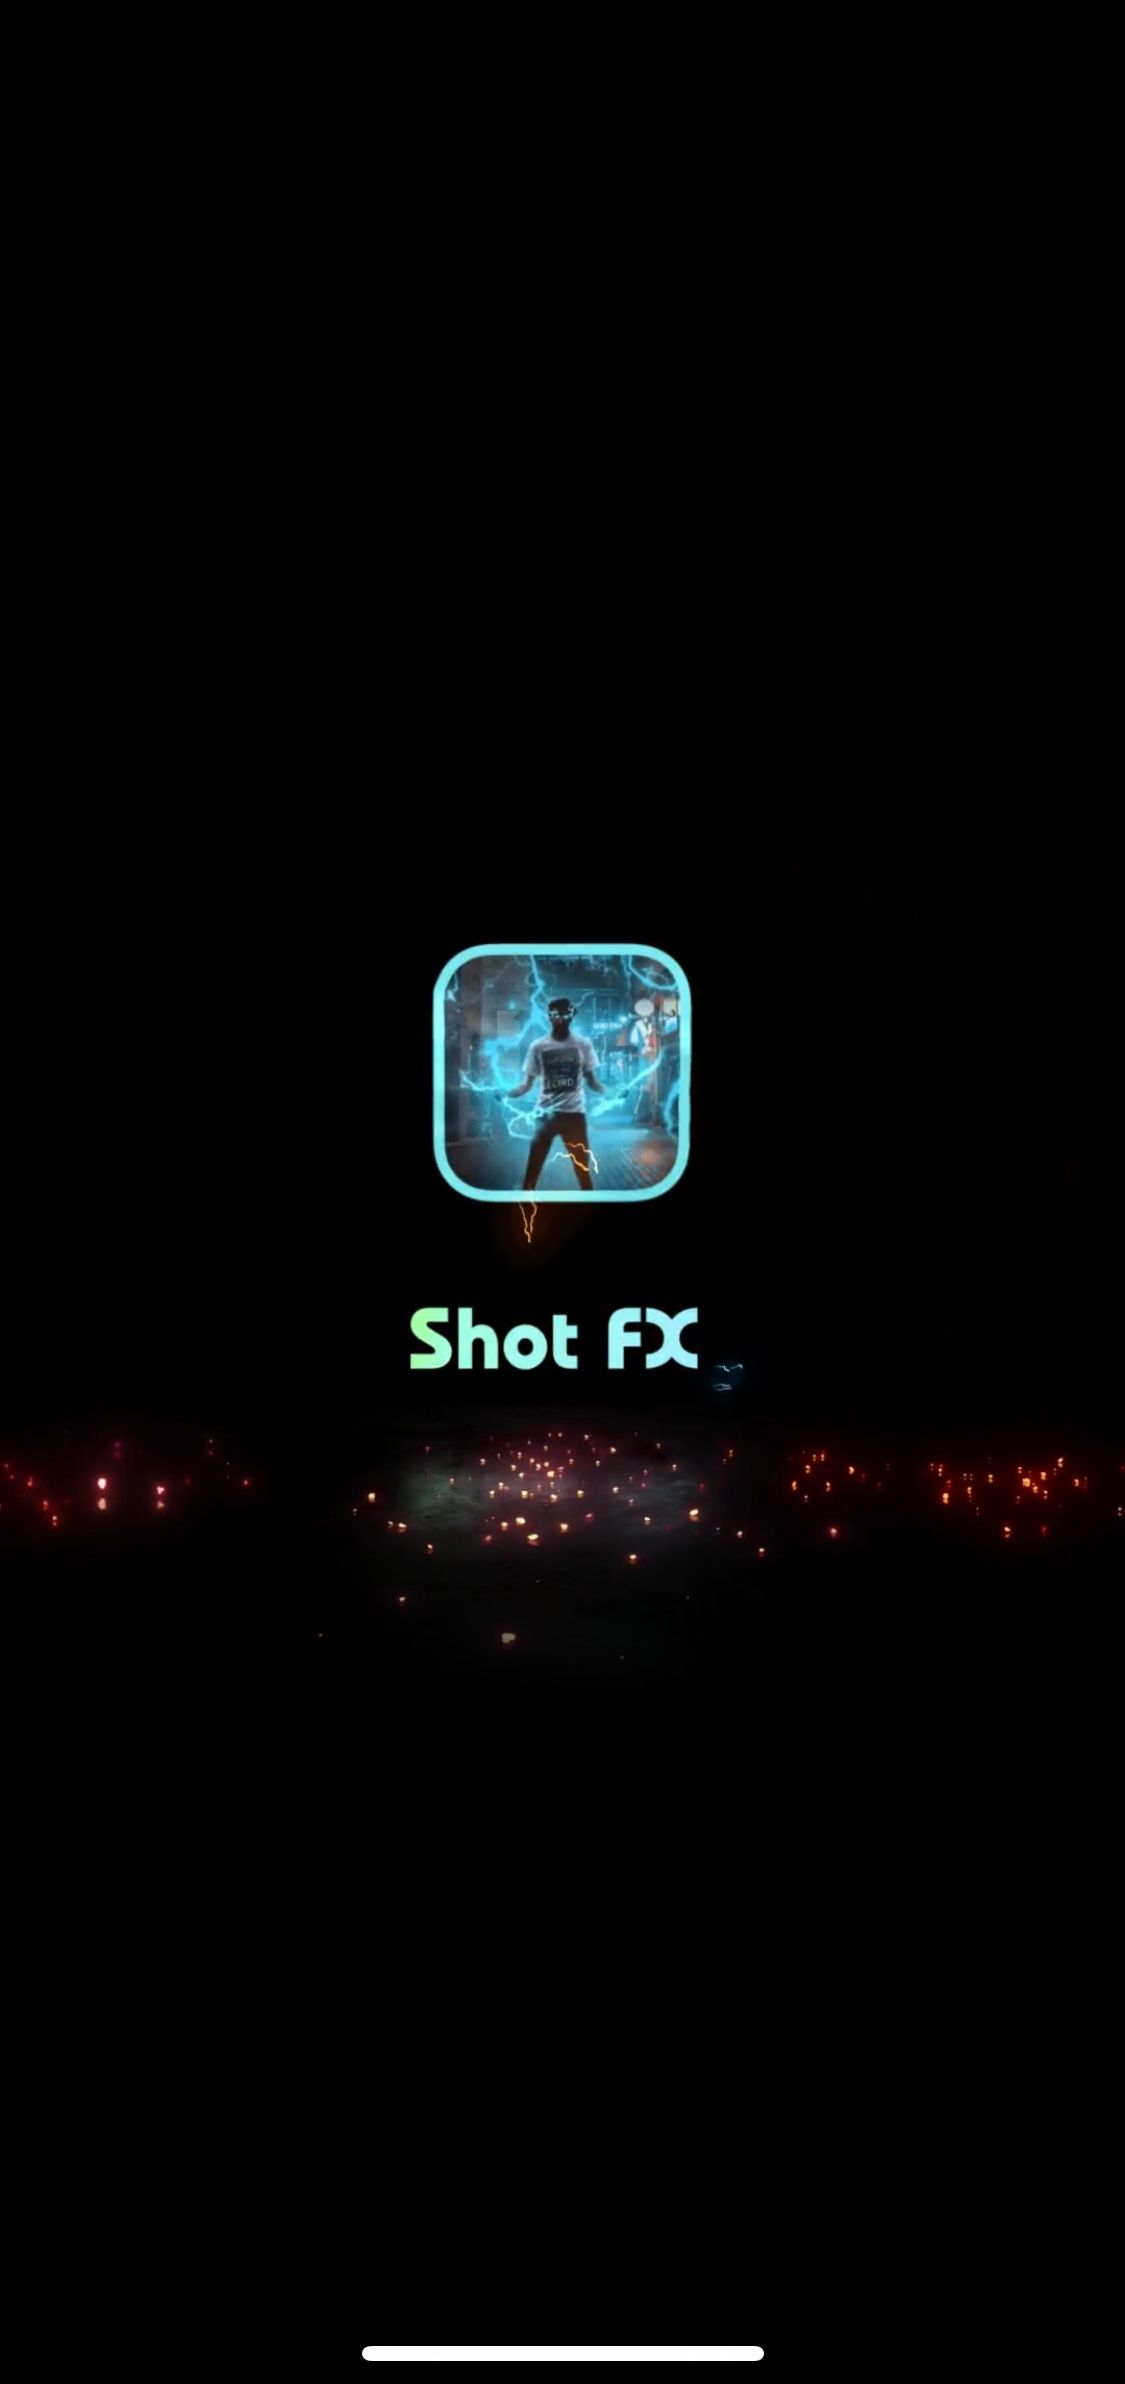 shotfx logo